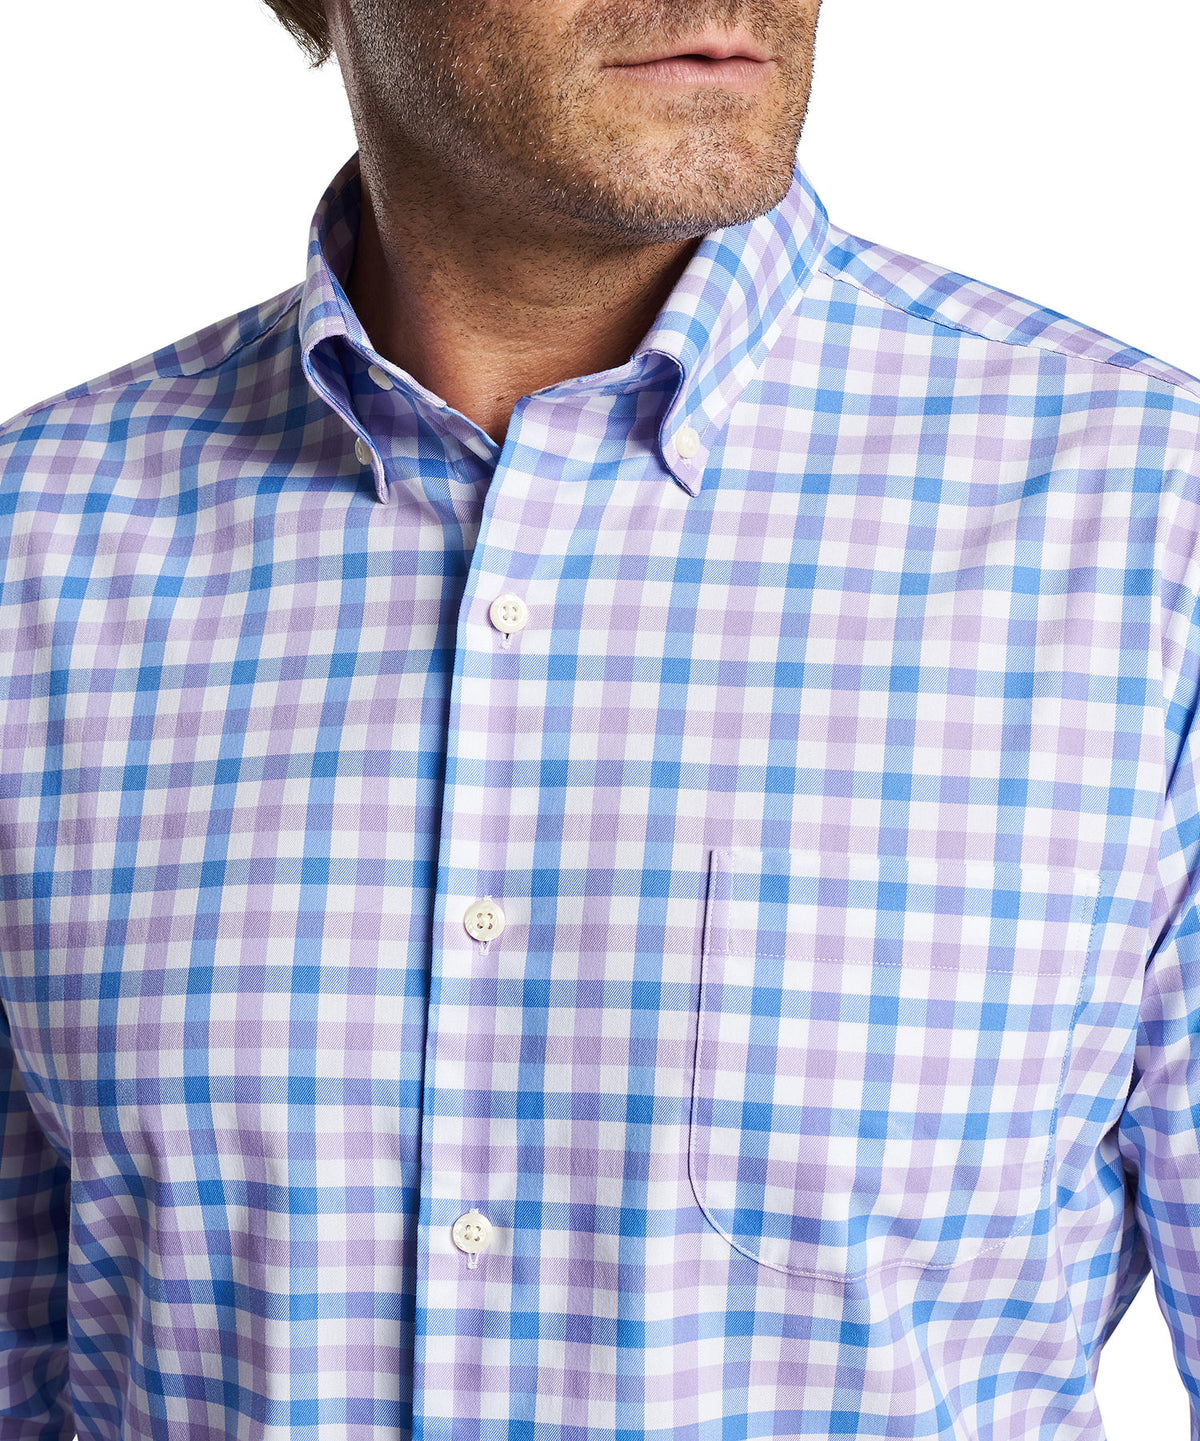 Peter Millar Long Sleeve Castine Button-Down Collar Patterned Sport Shirt